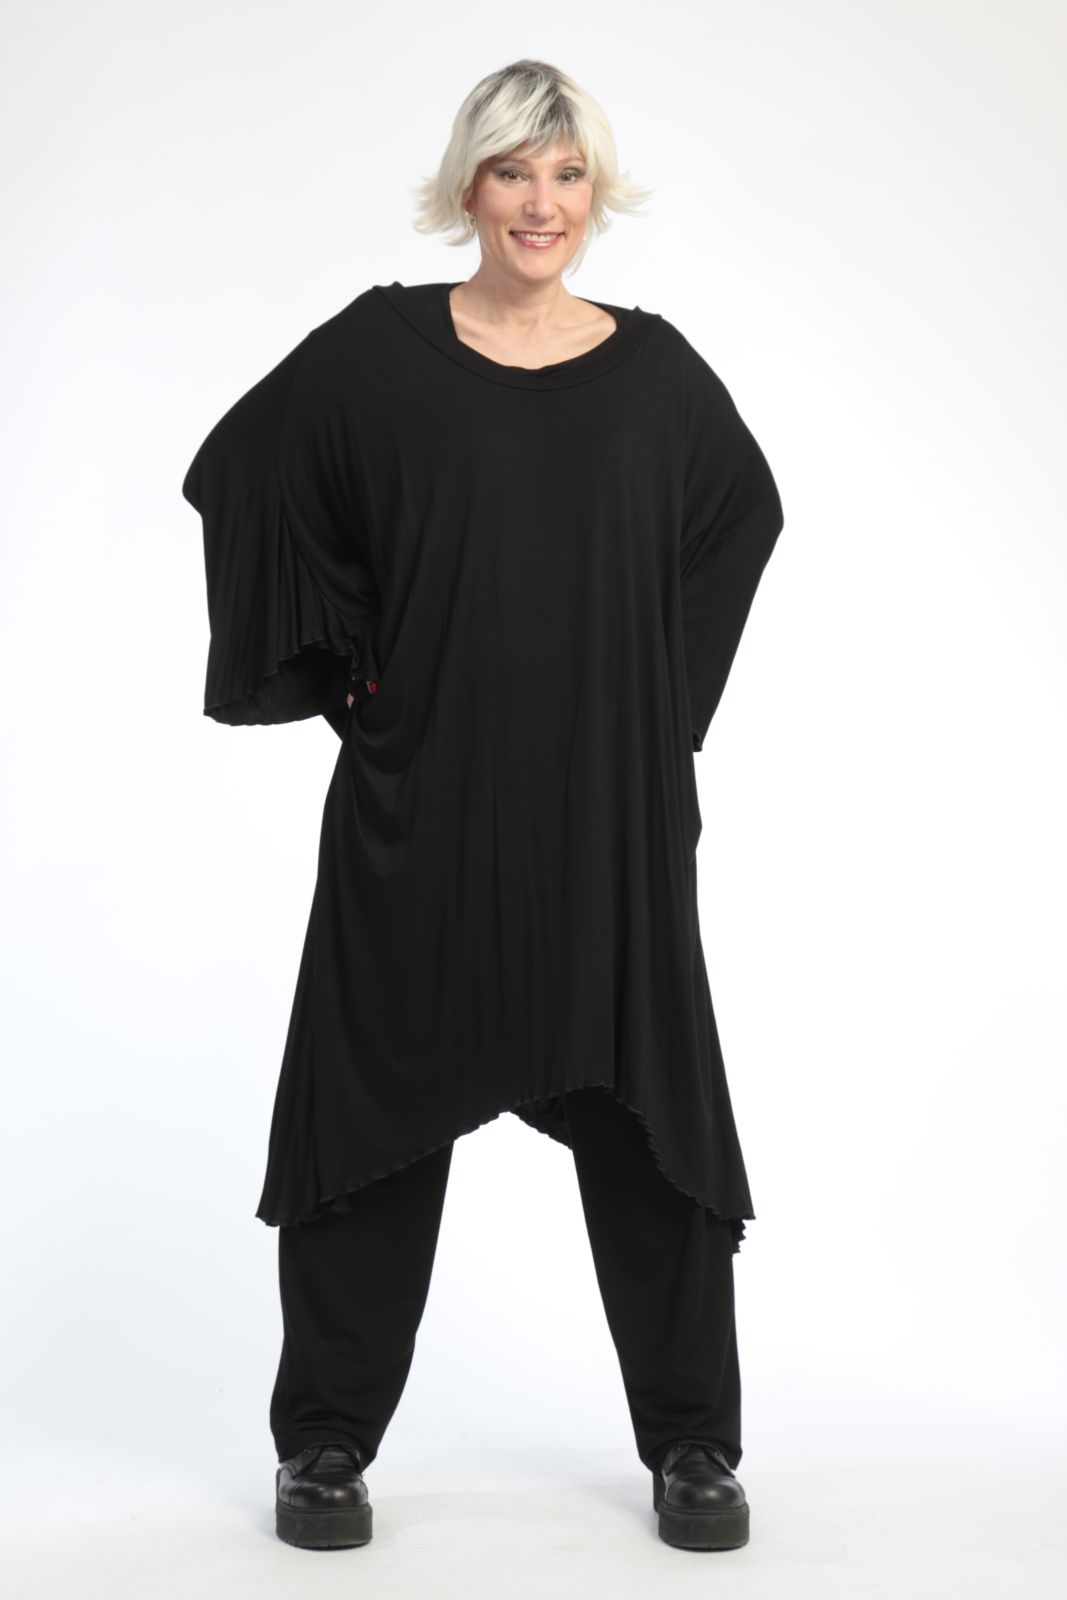 Alltags Kleid in A-Form aus glatter Jersey Qualität, Viskose-Basics in Schwarz